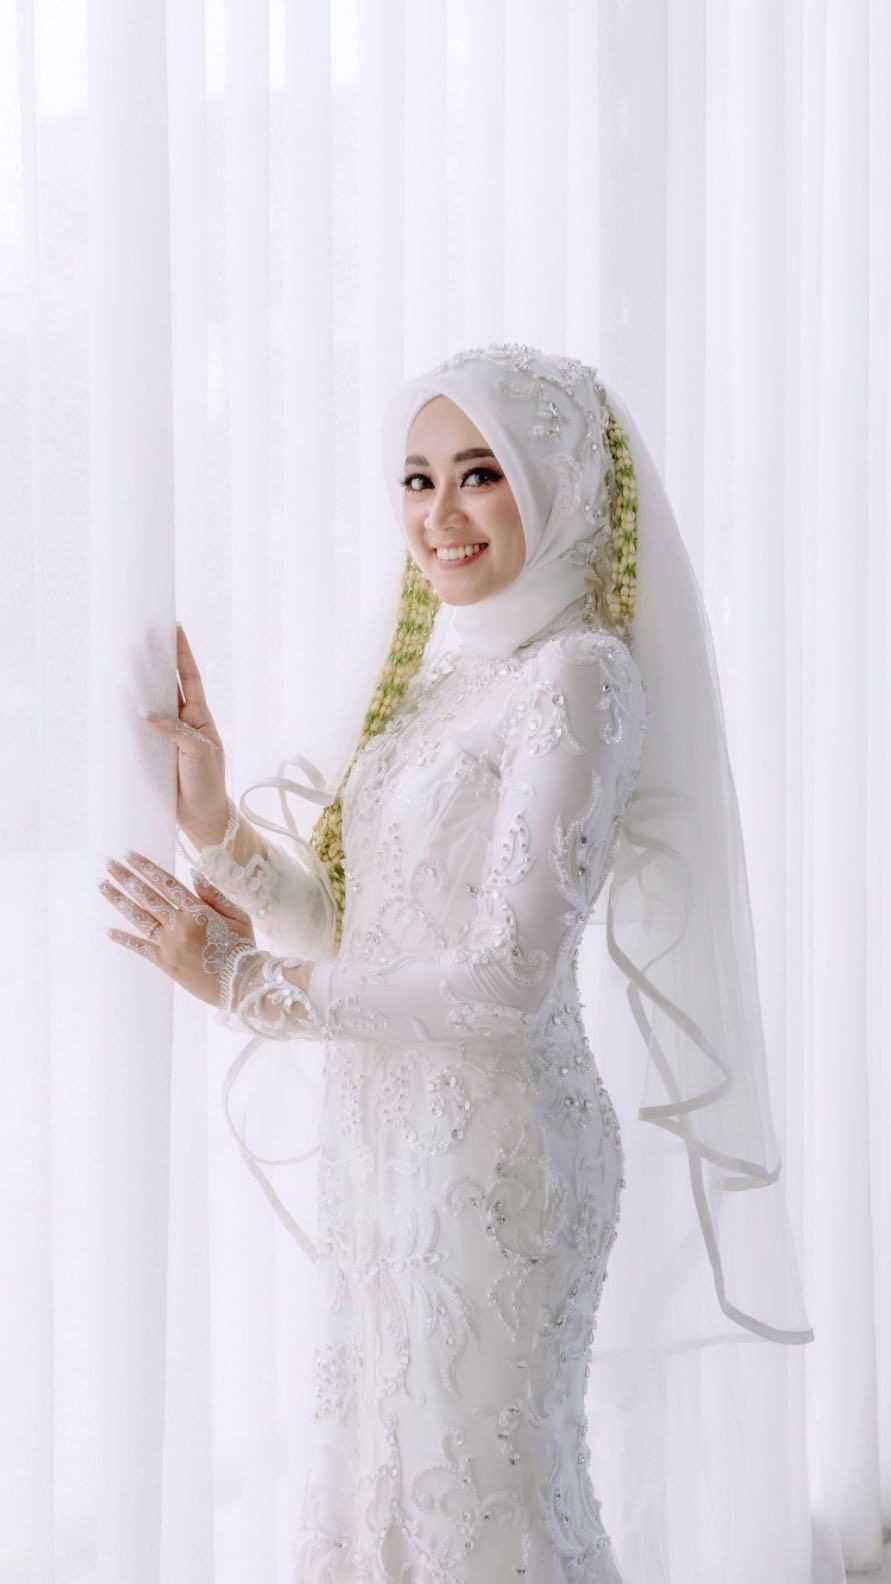 Selamat! 10 Momen Pernikahan Hansamu Yama Kapten Timnas Indonesia